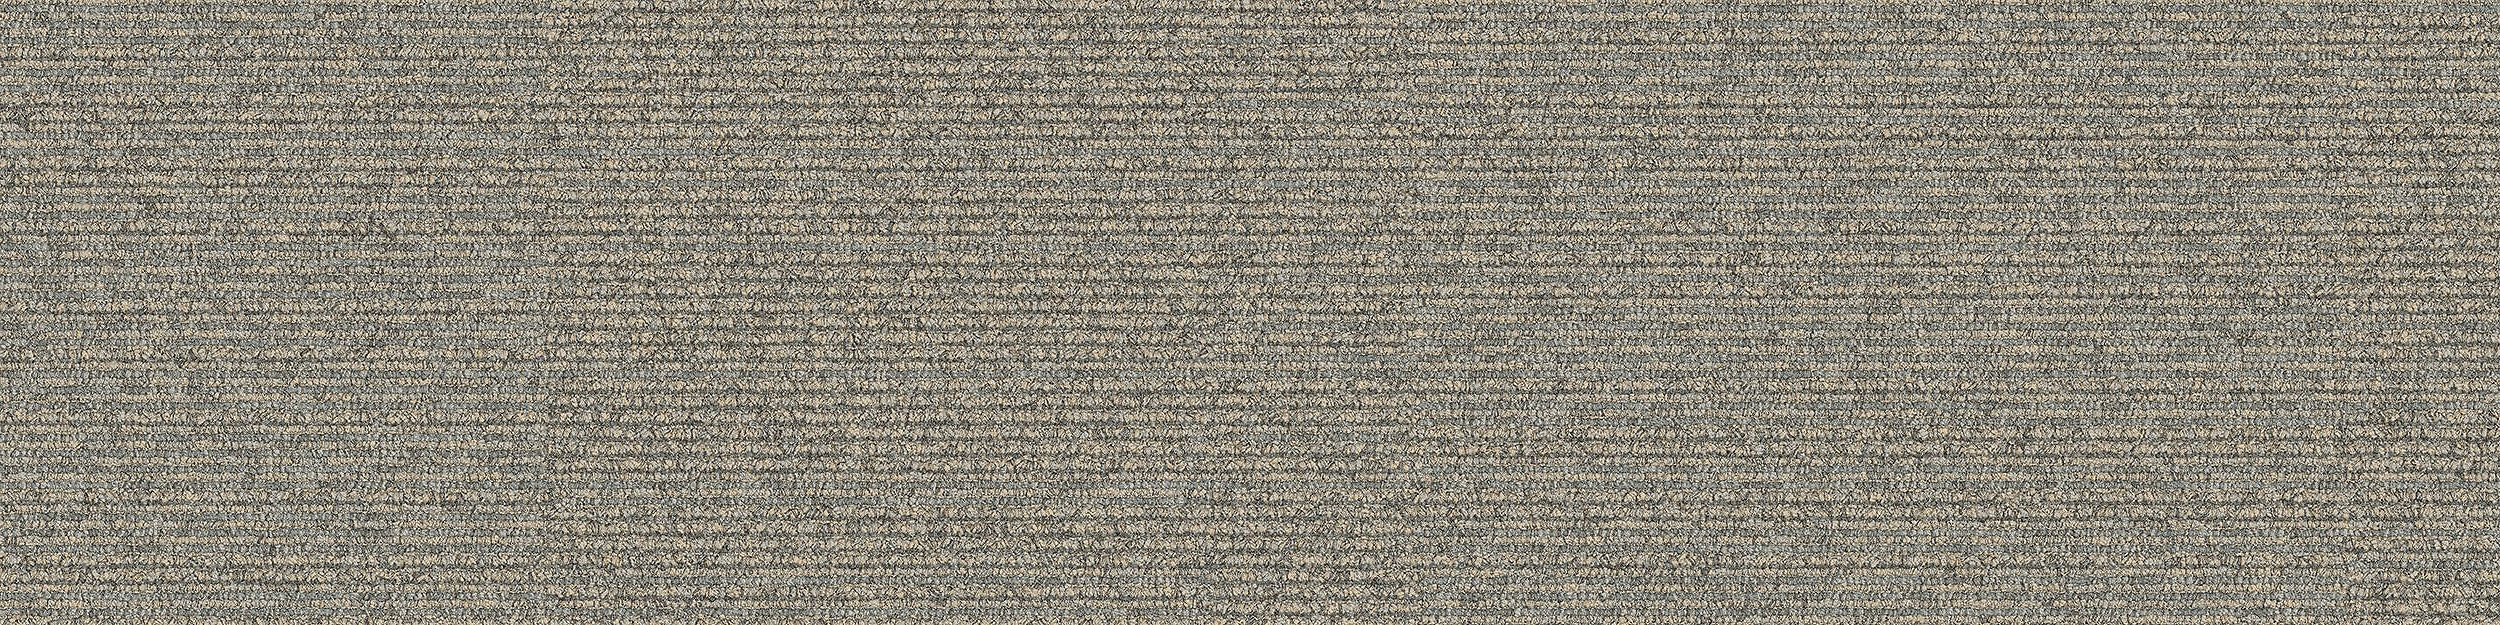 On Line Carpet Tile In Pigeon Bildnummer 13